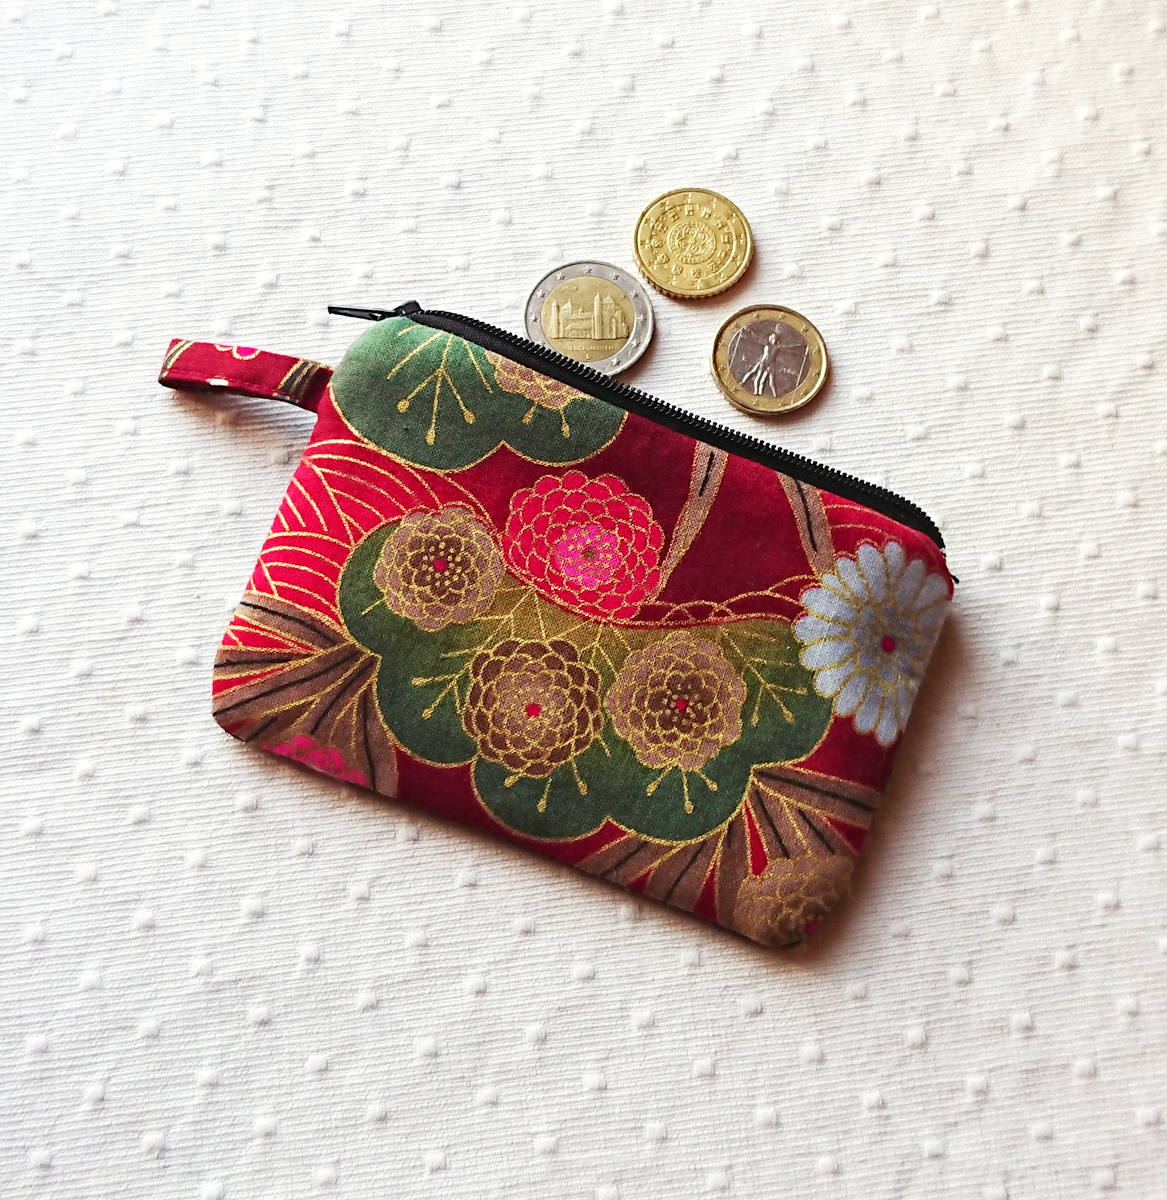 V2 - Petit Porte-monnaie tissu japonais coton imprimé floral Rouge / Vert  et Or 12 x 8,5 cm, fermeture à glissière - Ann M. Création Bijoux et objets  textile